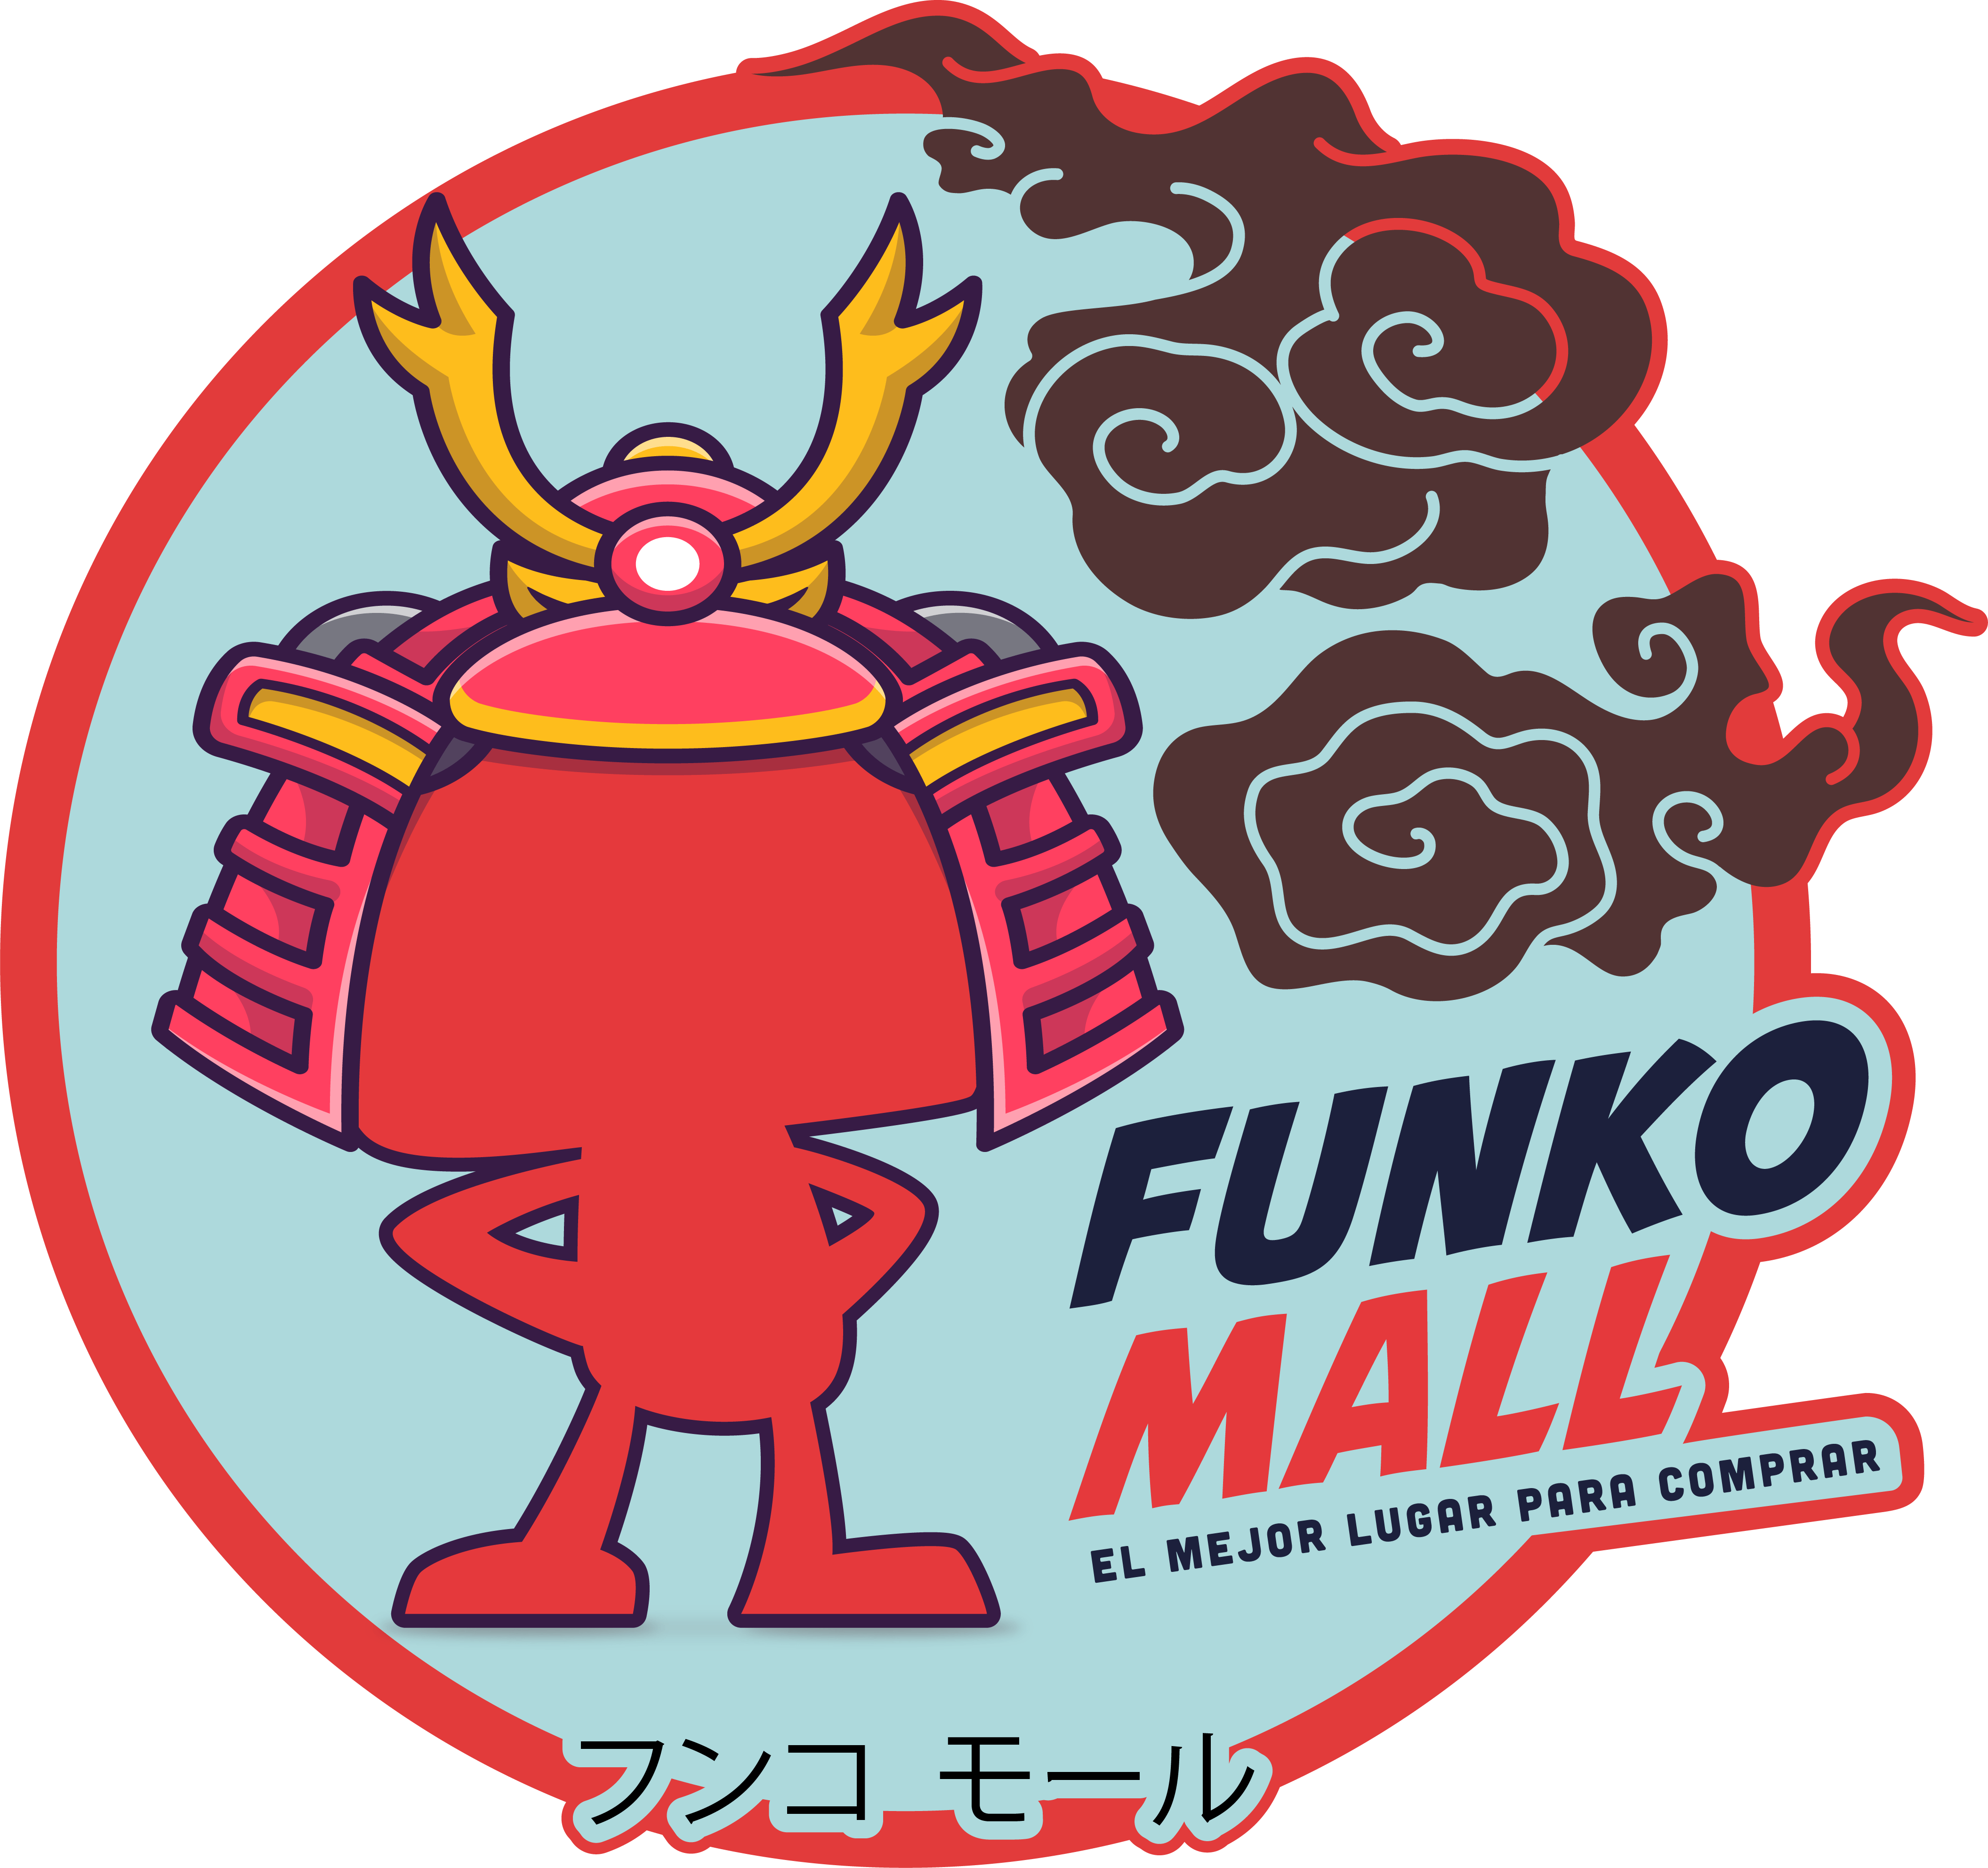 Funko Mall